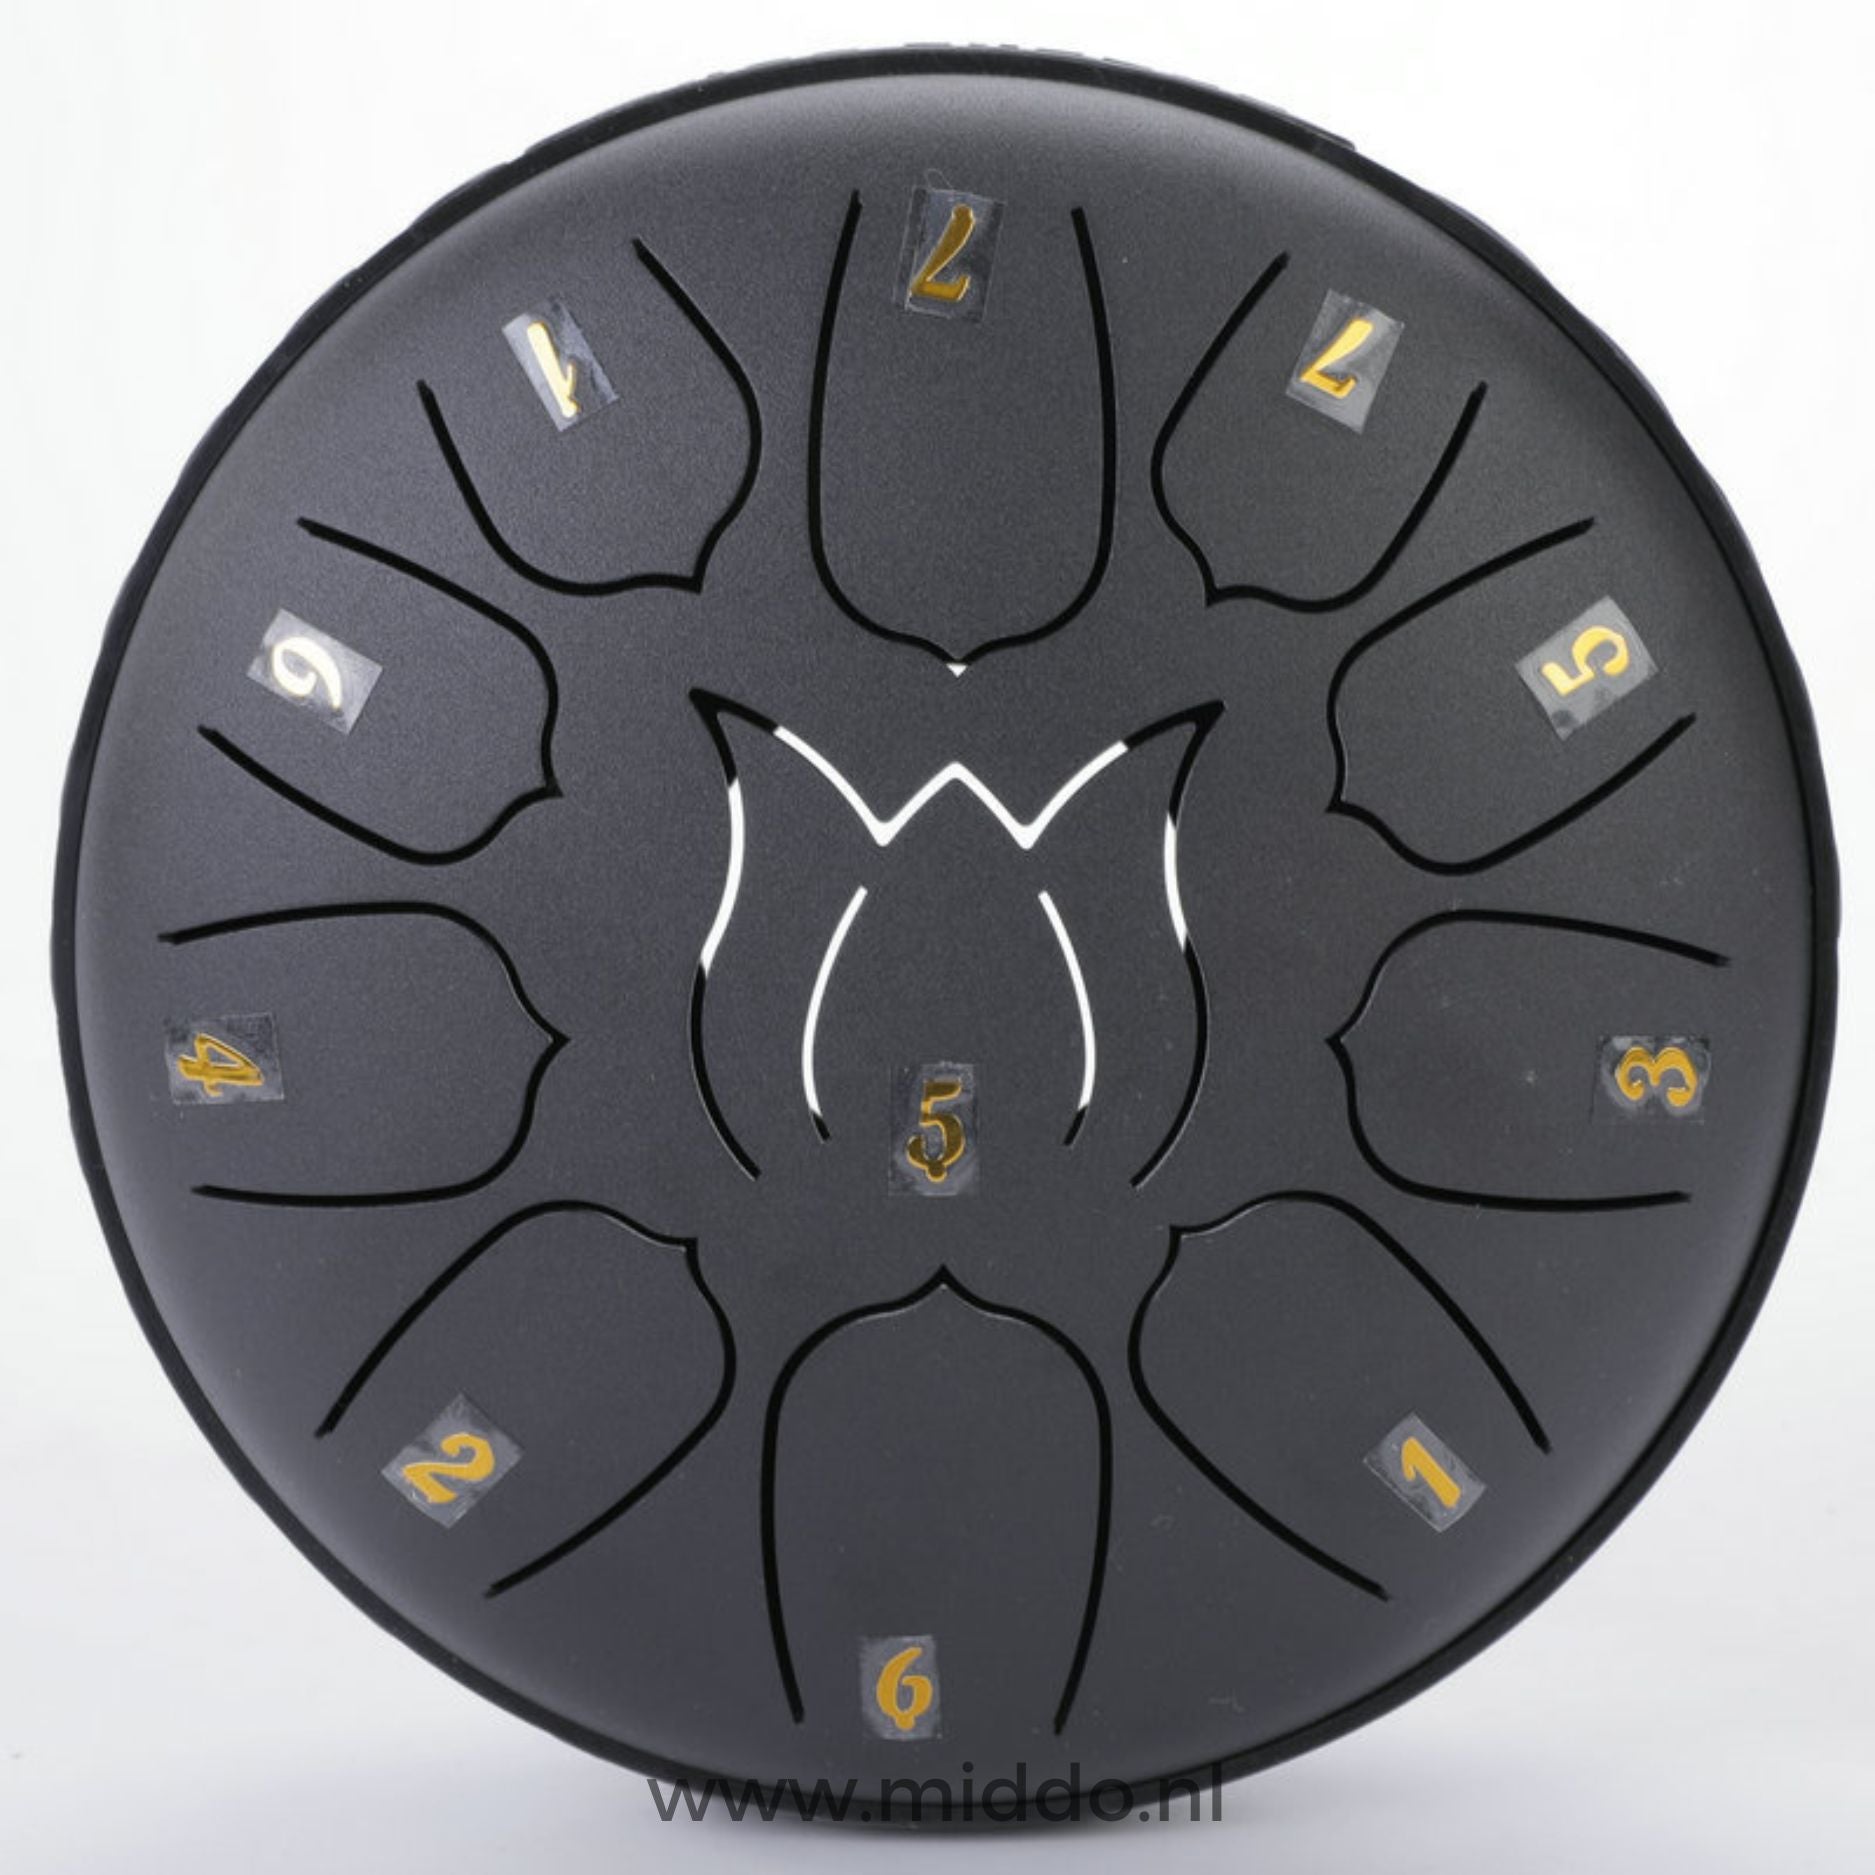 Zwarte steel tongue drum met cijfers op een witte achtergrond